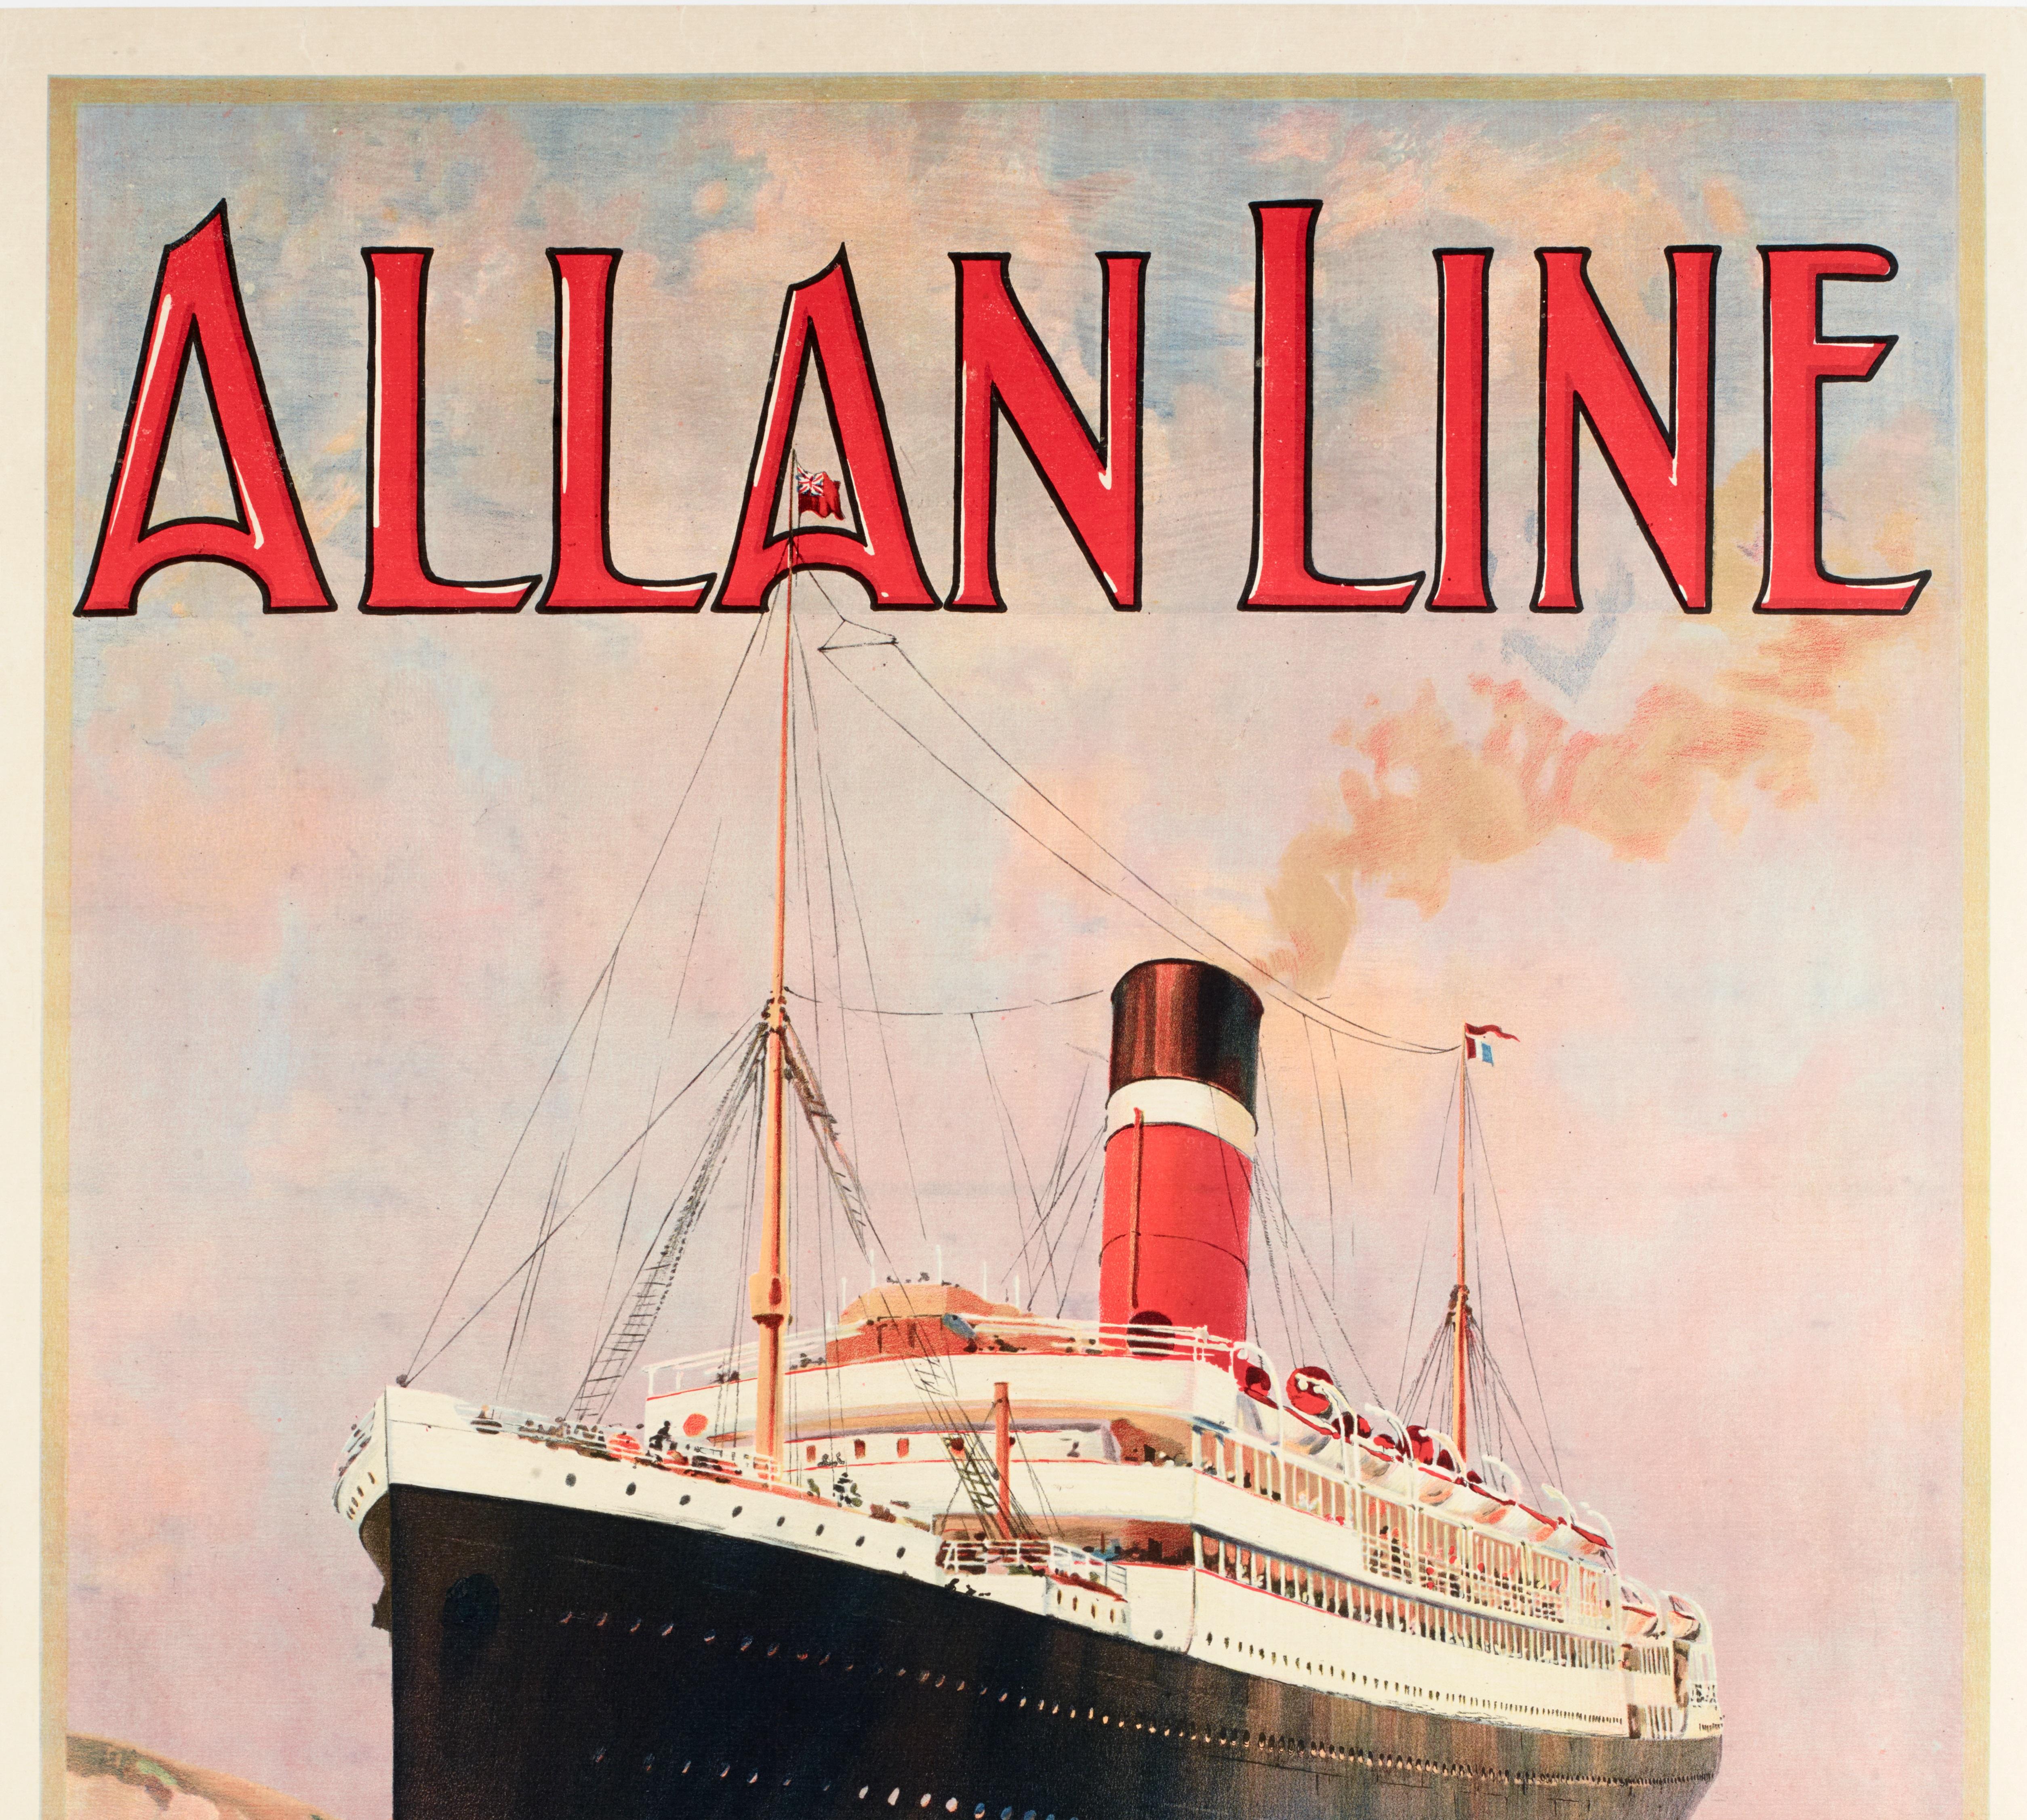 Original Vintage Bootsfahrt Plakat für die Allan Line im Jahr 1900 von Rosenvinge.

Künstler: Odin Rosenvinge
Titel: Allan Line - London & Plymouth nach Quebec & Montreal
Datum: ca. 1900-1910
Größe (B x H): 24,8 x 39,9 in / 63 x 101,4 cm
Druckerei: